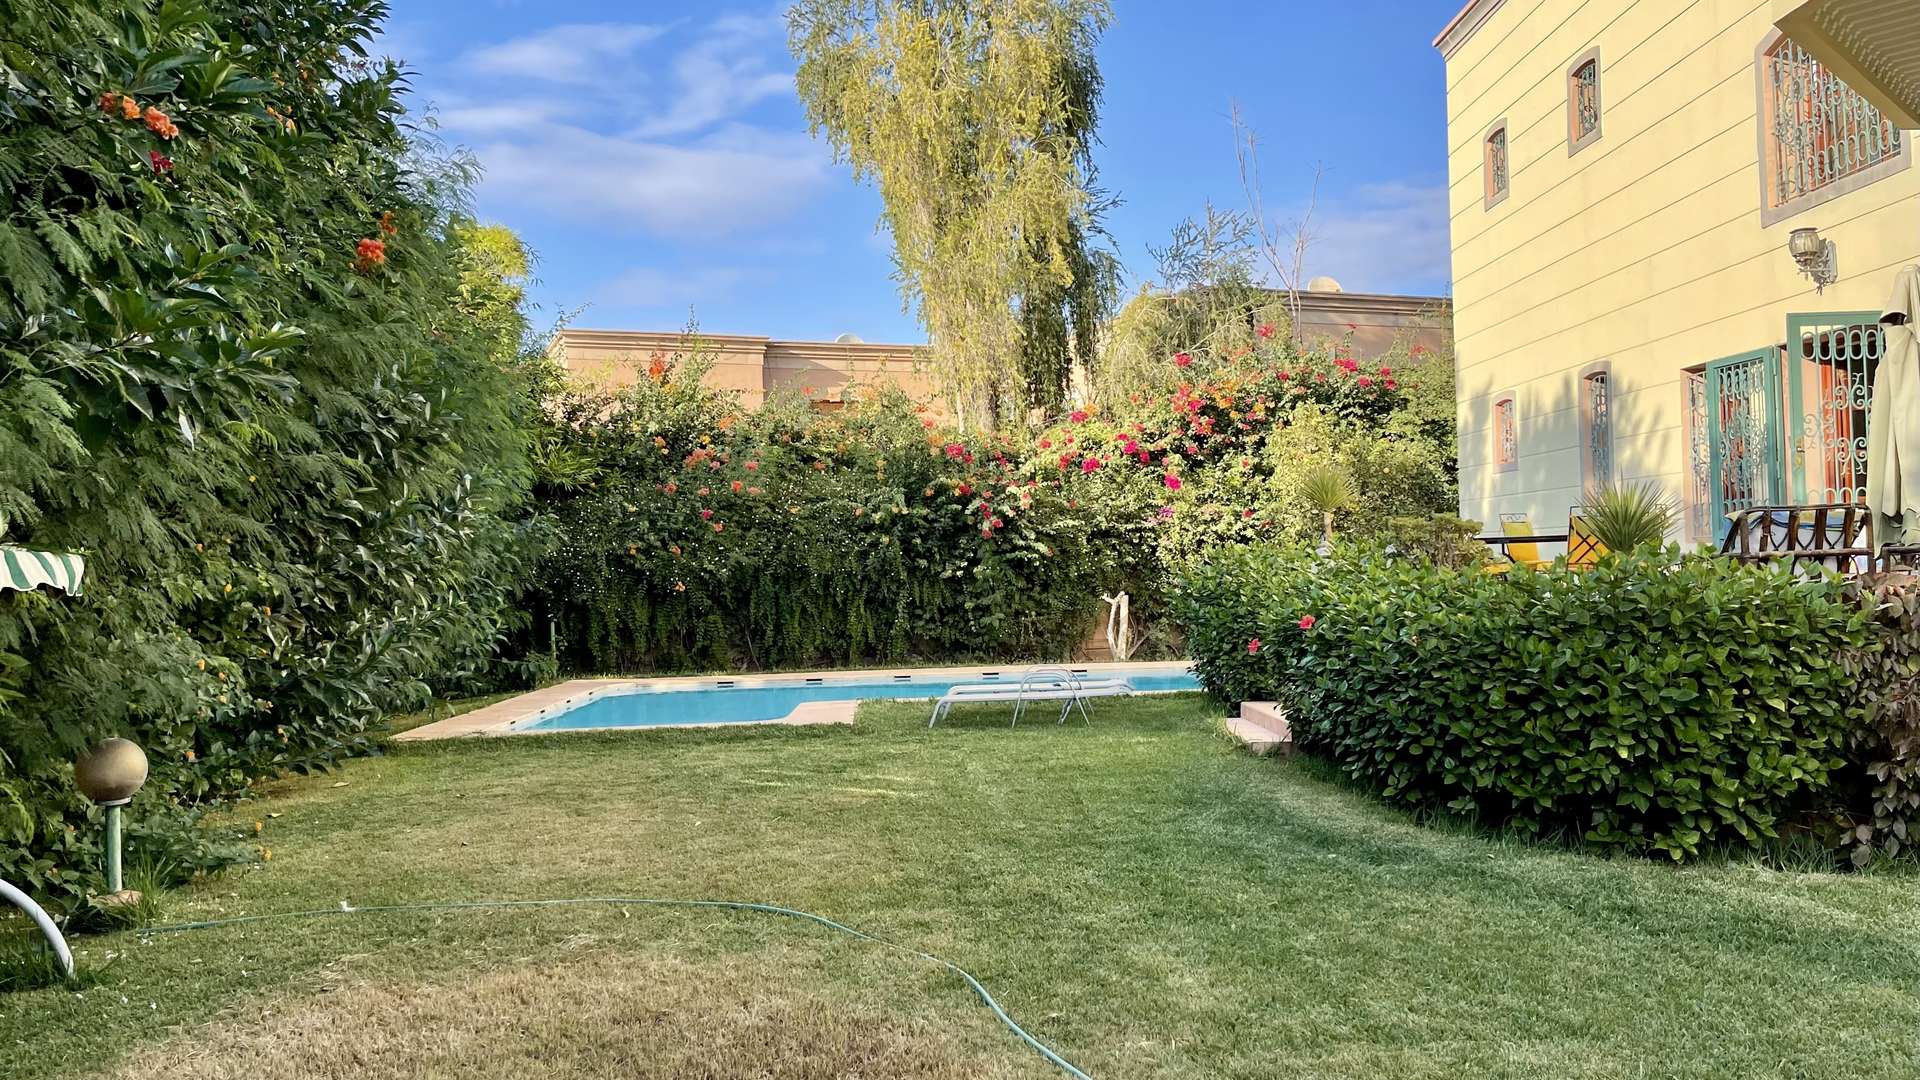 Vente,Villa,Villa isolée de 1040M2 à Targa à proximité de toutes les commodités,Marrakech,Targa